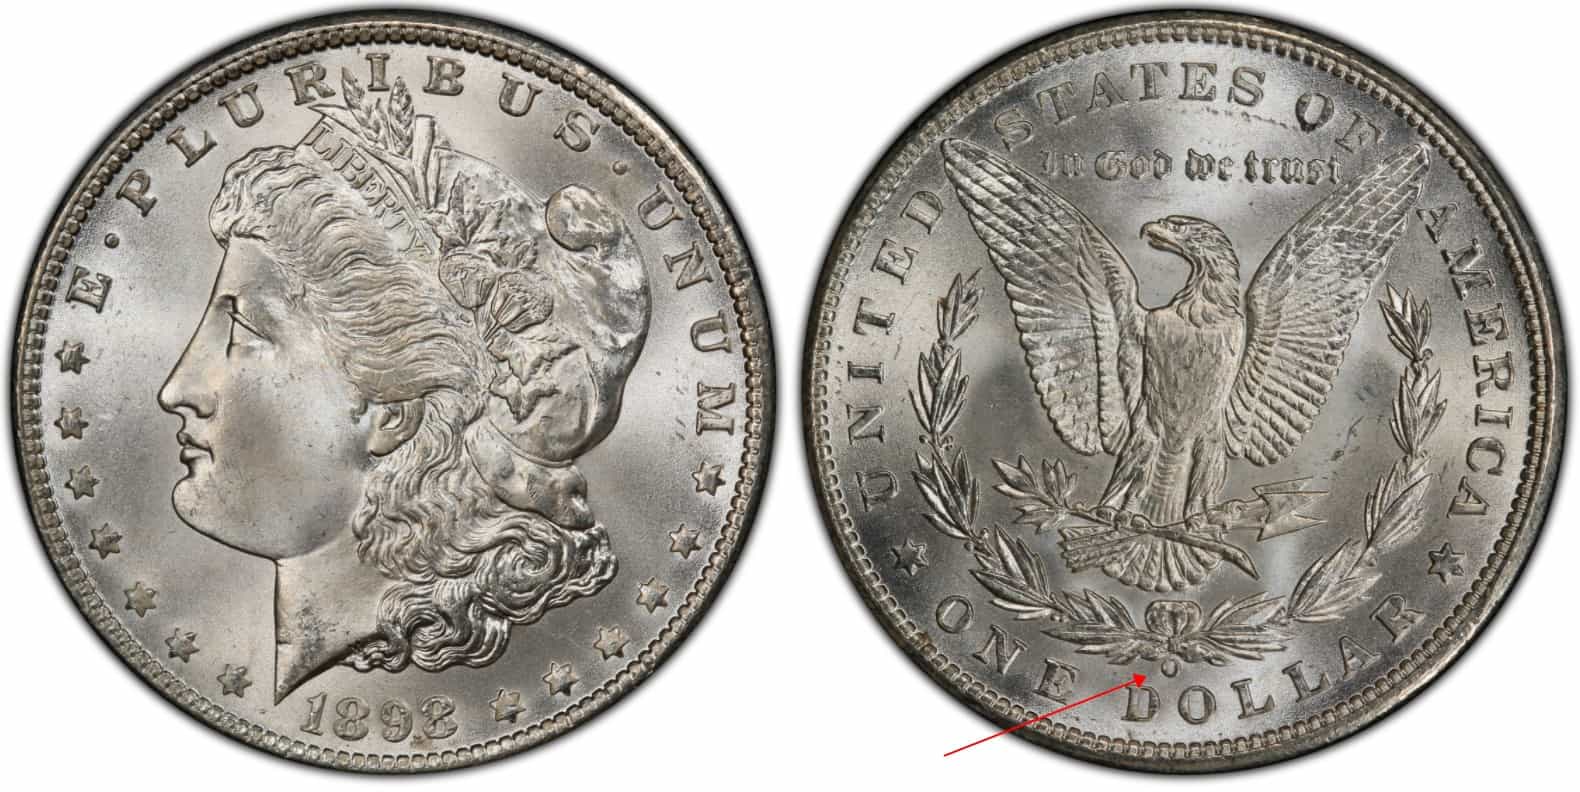 1898 O Morgan silver dollar